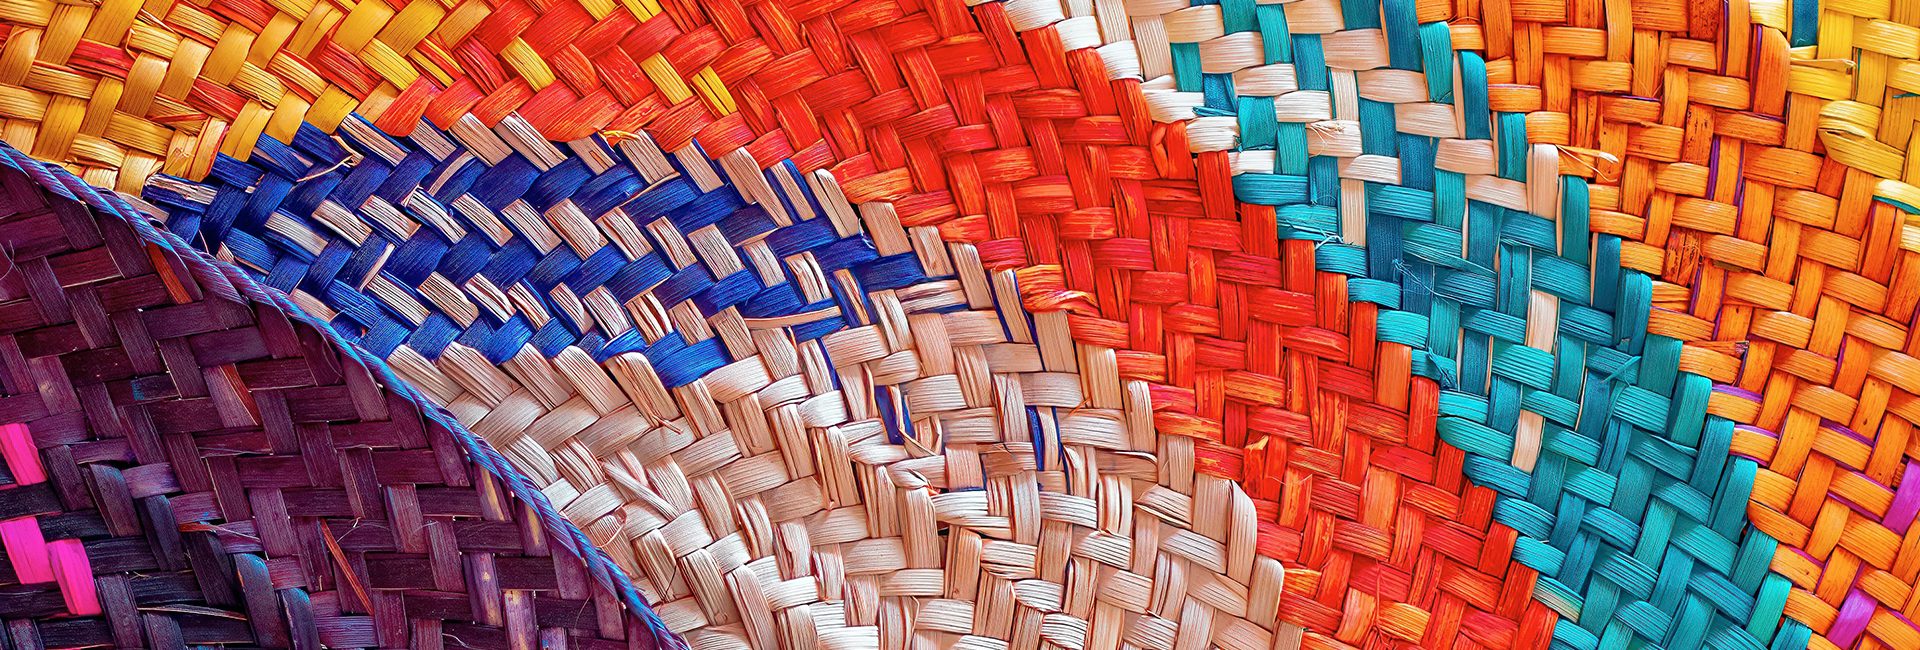 multi-colored-woven-baskets